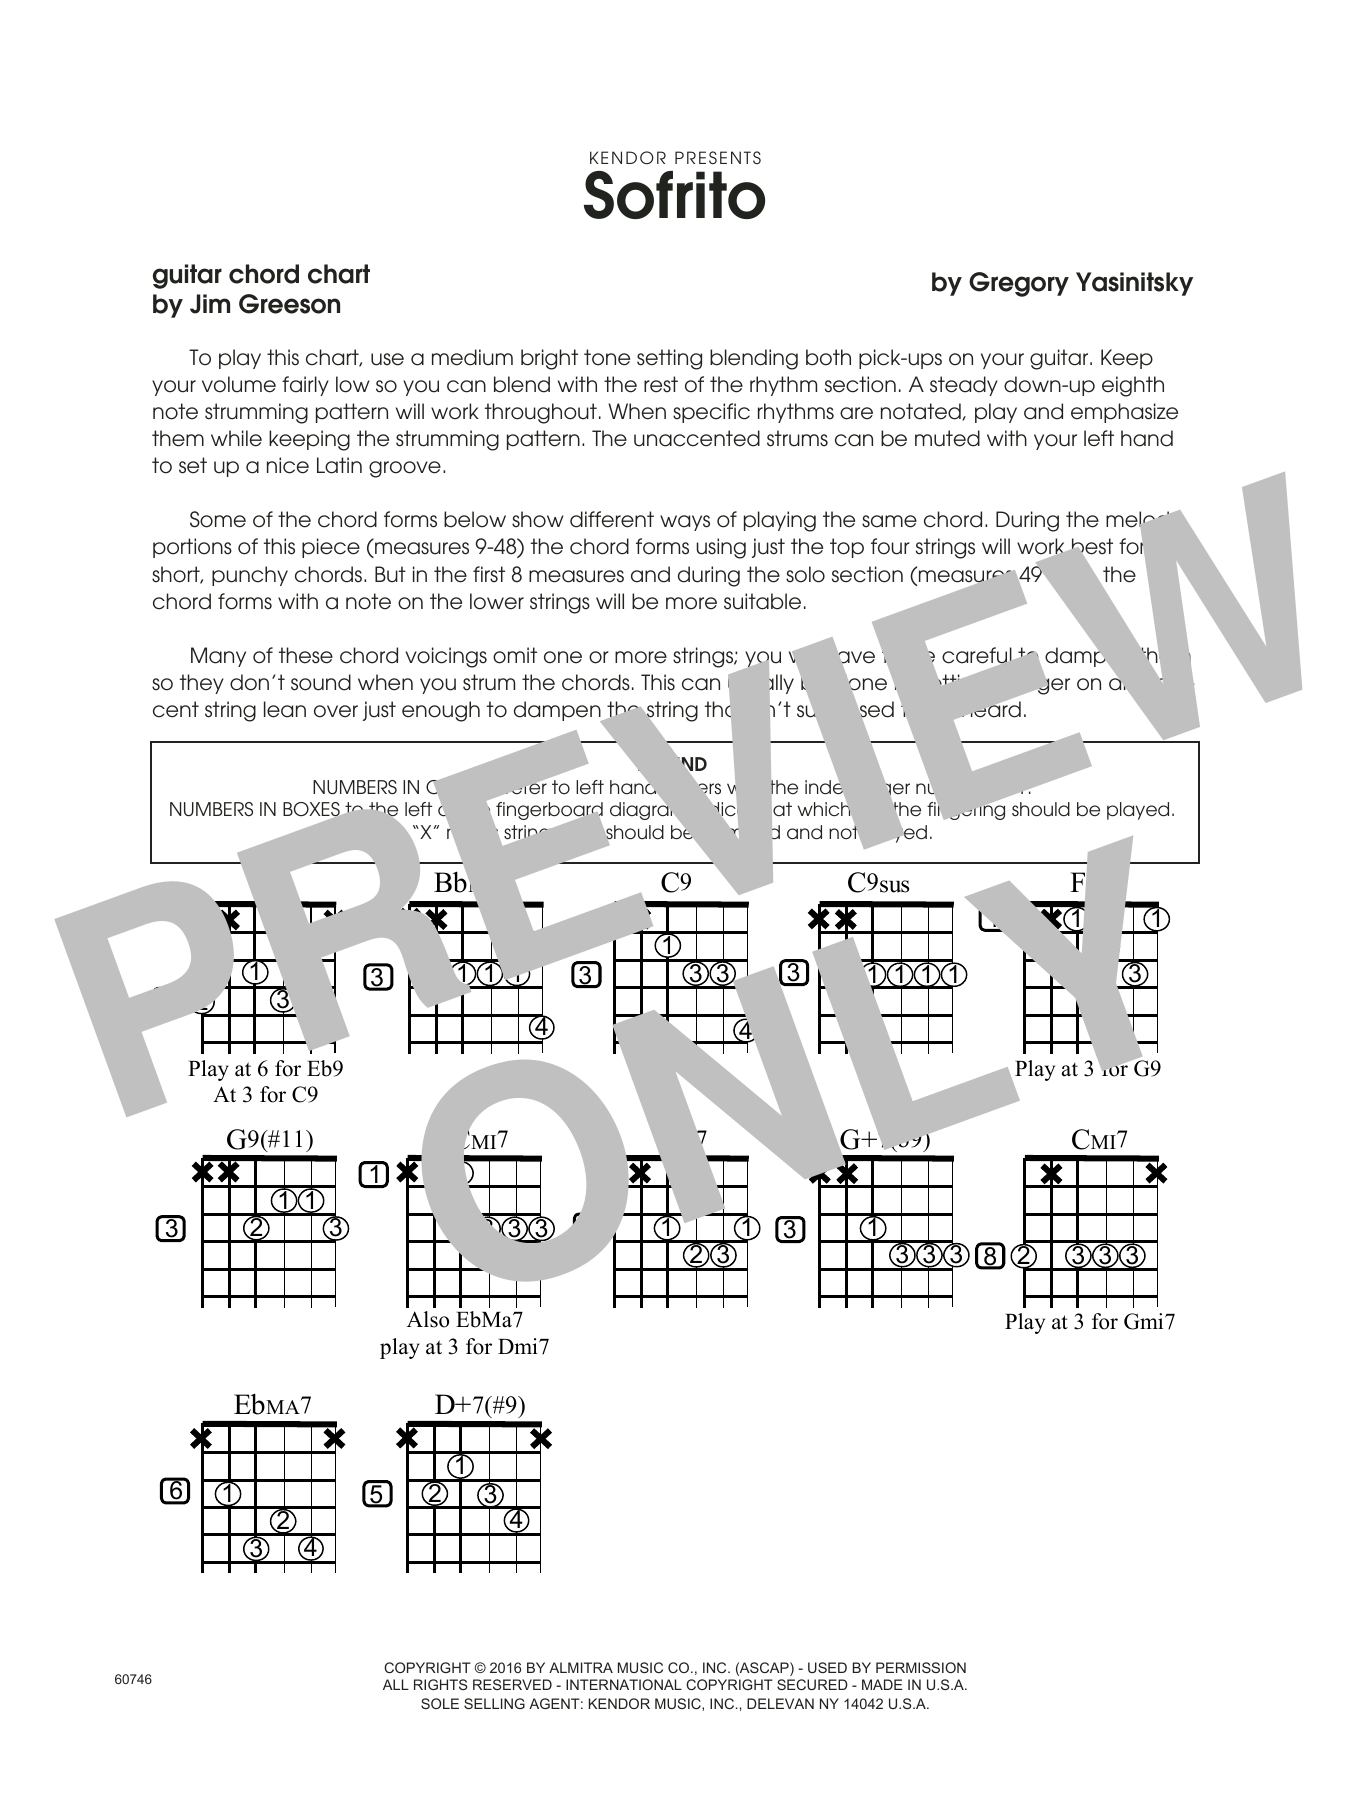 Download Gregory Yasinitsky Sofrito - Guitar Chord Chart Sheet Music